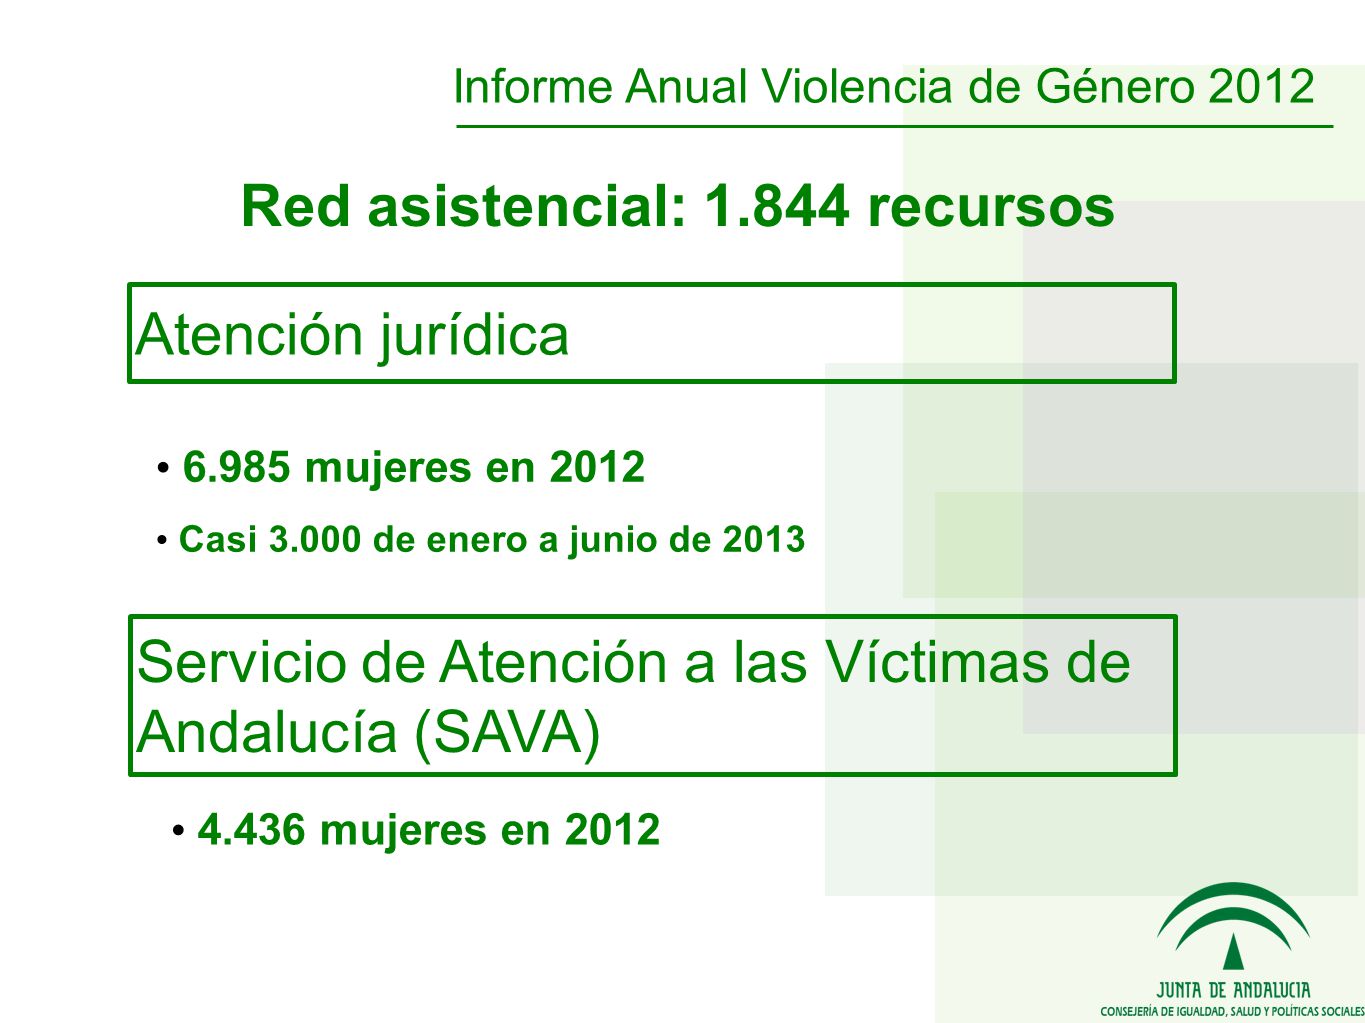 Atención jurídica mujeres en 2012 Casi de enero a junio de 2013 Servicio de Atención a las Víctimas de Andalucía (SAVA) mujeres en 2012 Informe Anual Violencia de Género 2012 Red asistencial: recursos